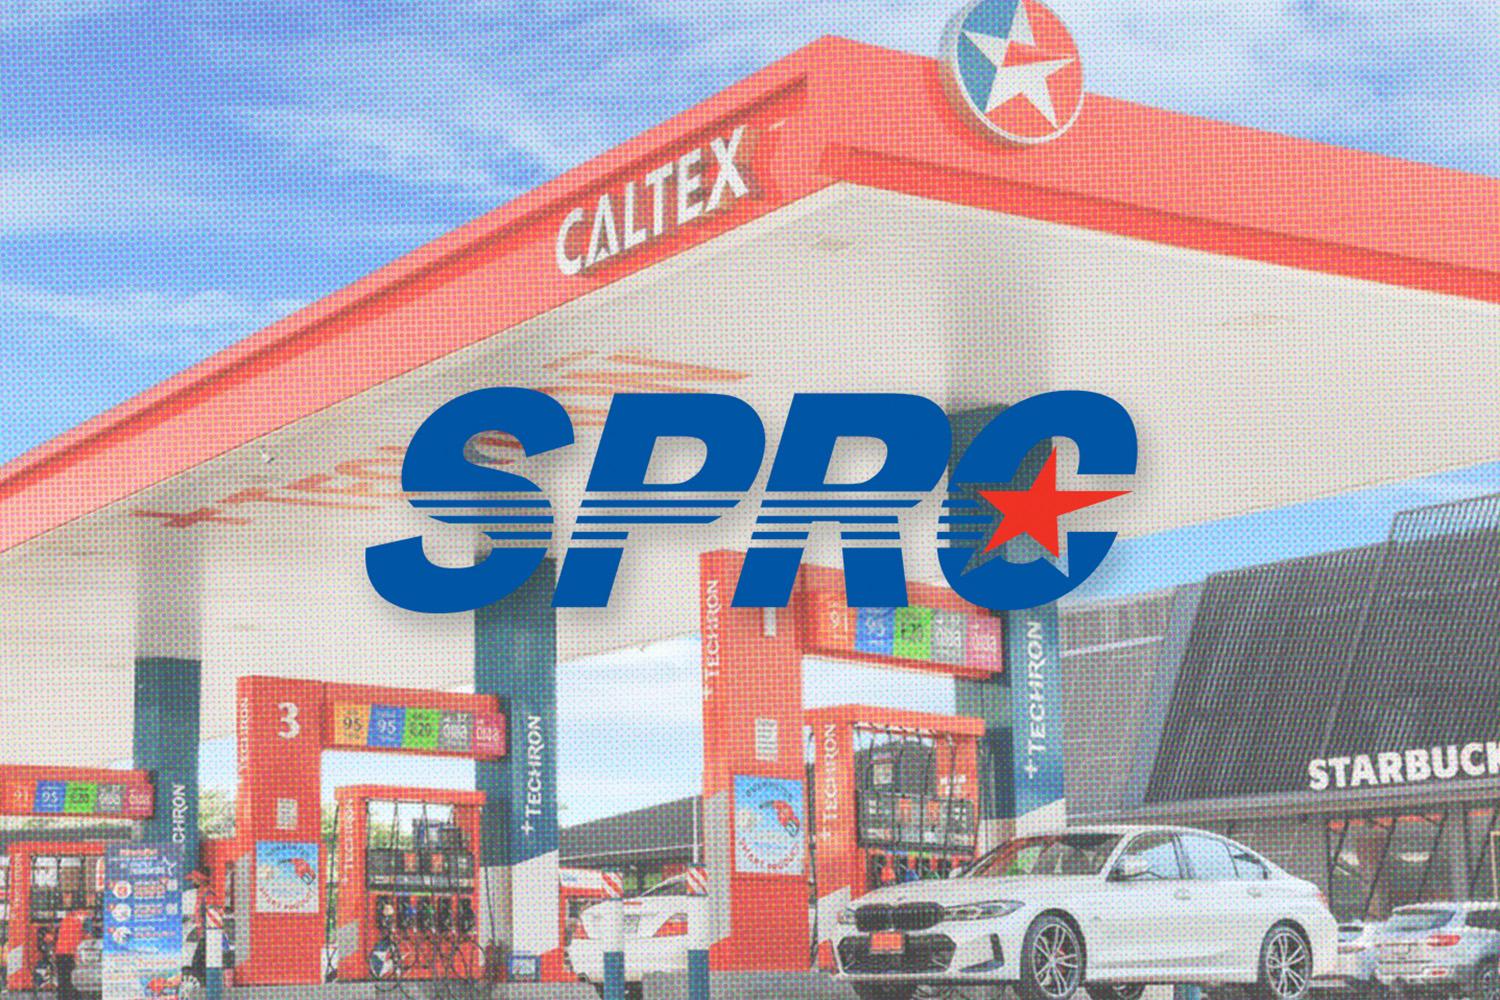 sprc-chevron-thailand-caltex-gas-station-SPACEBAR-Hero.jpg